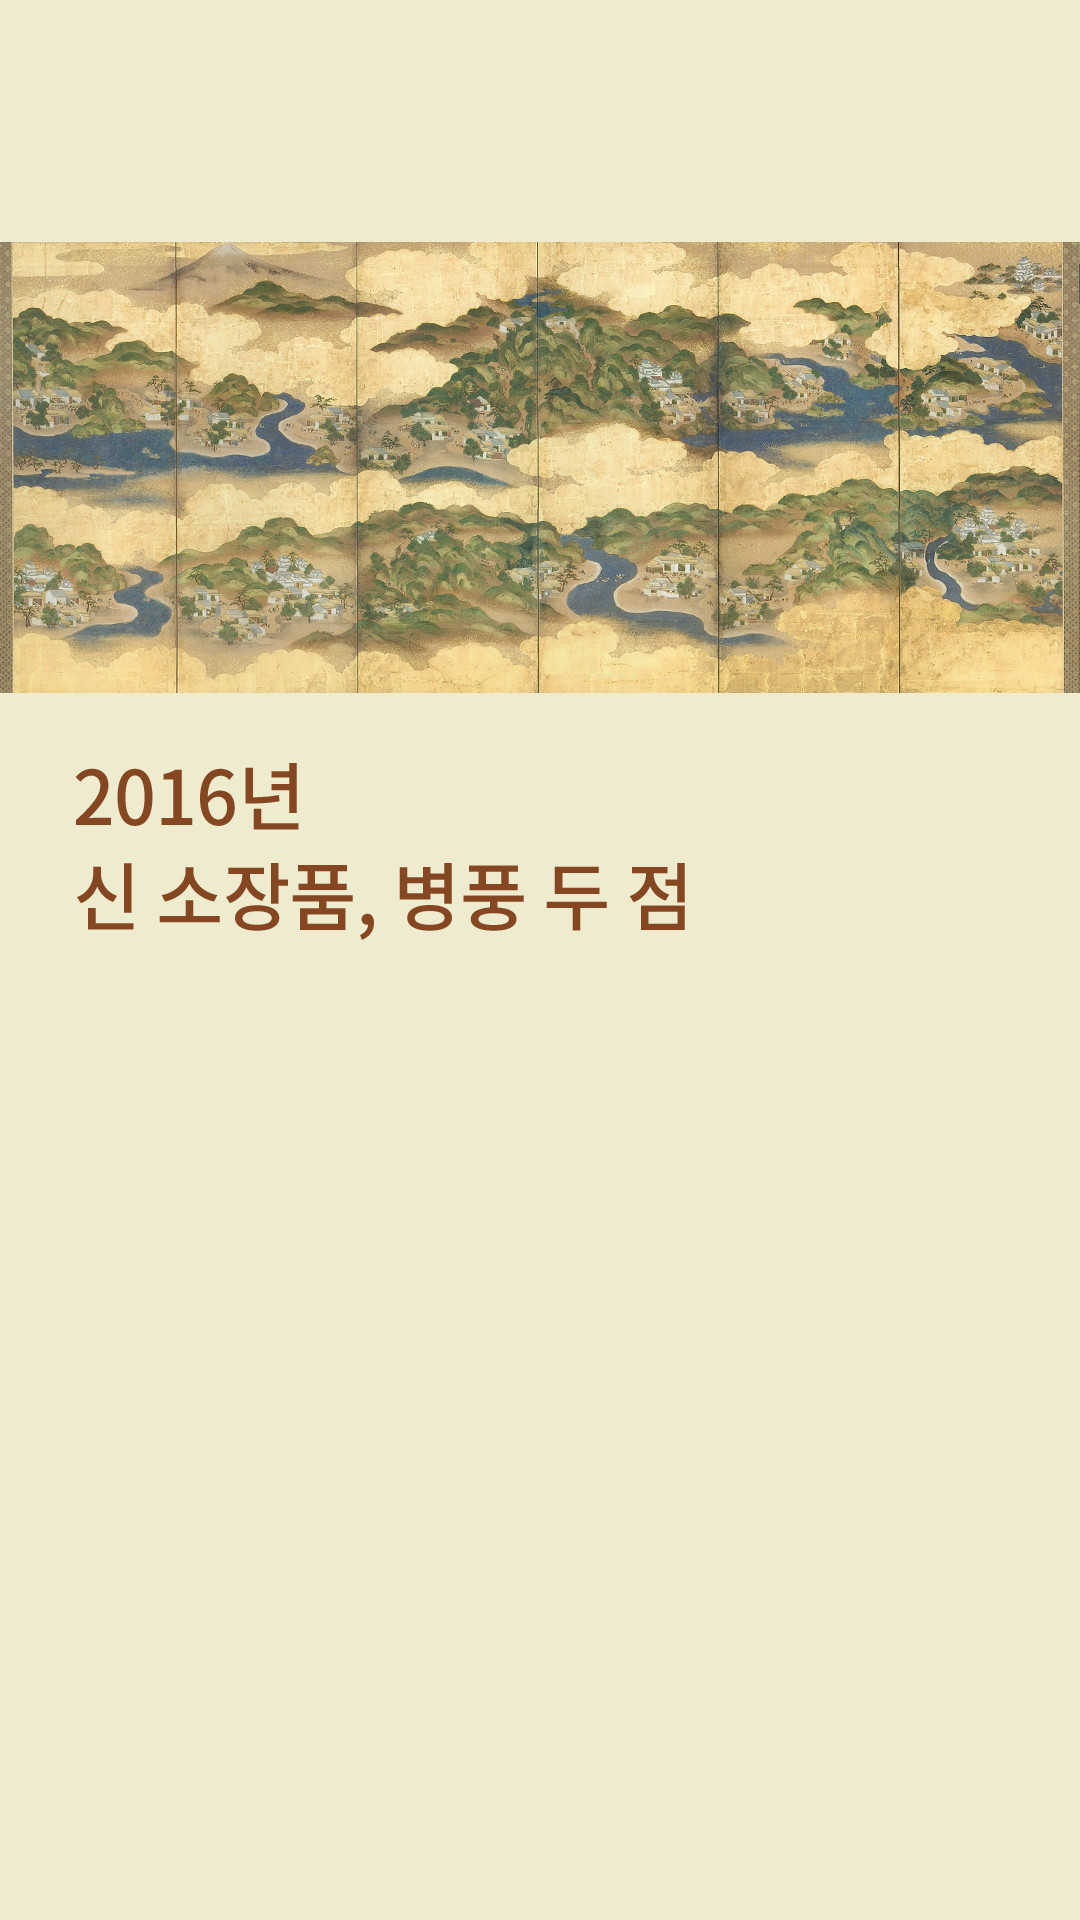 2016년 신소장품, 병풍 두 점